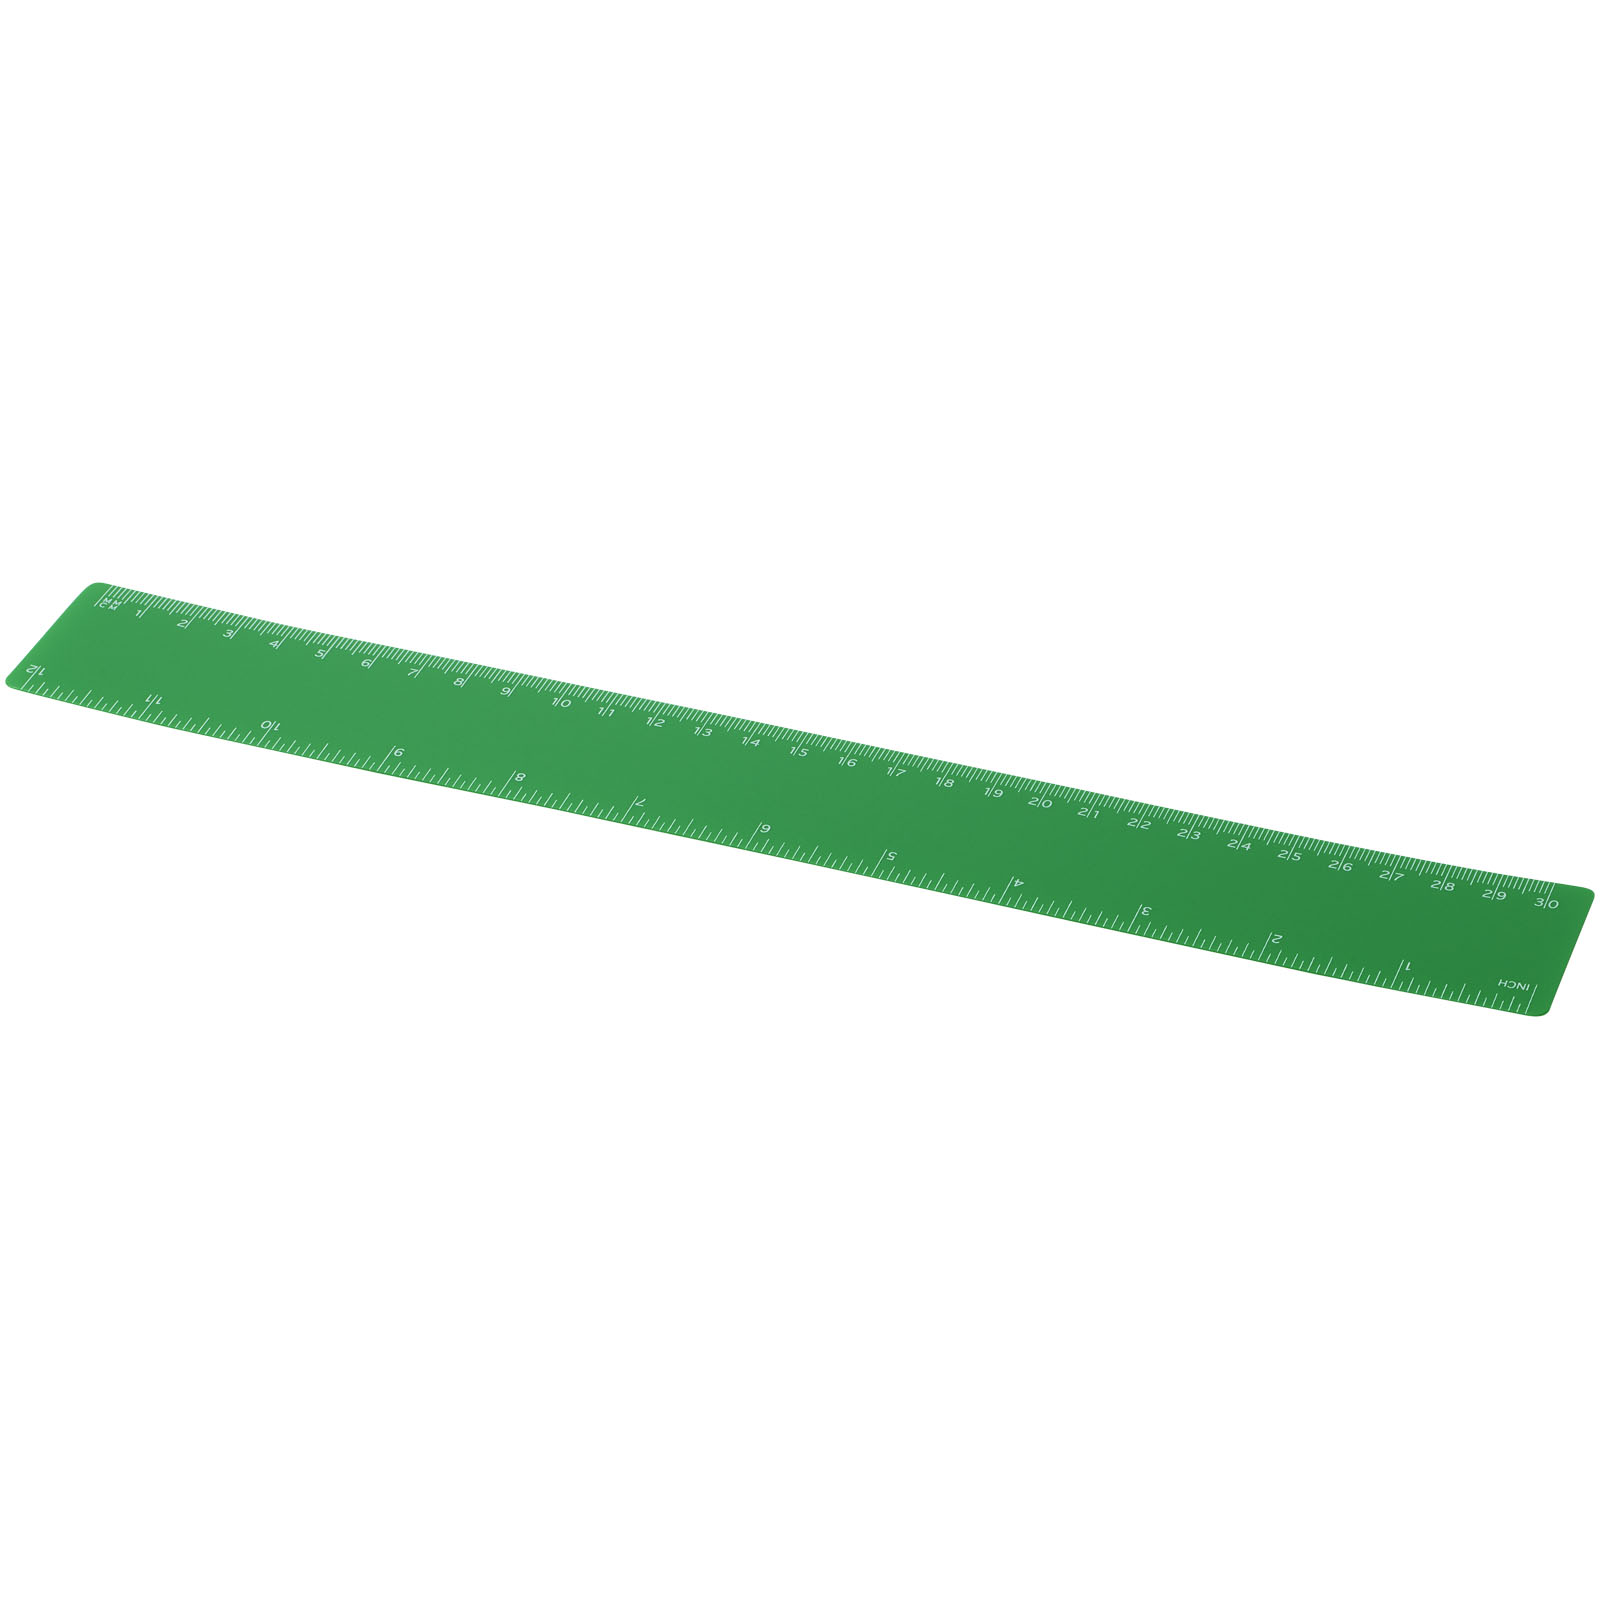 Desk Accessories - Rothko 30 cm plastic ruler